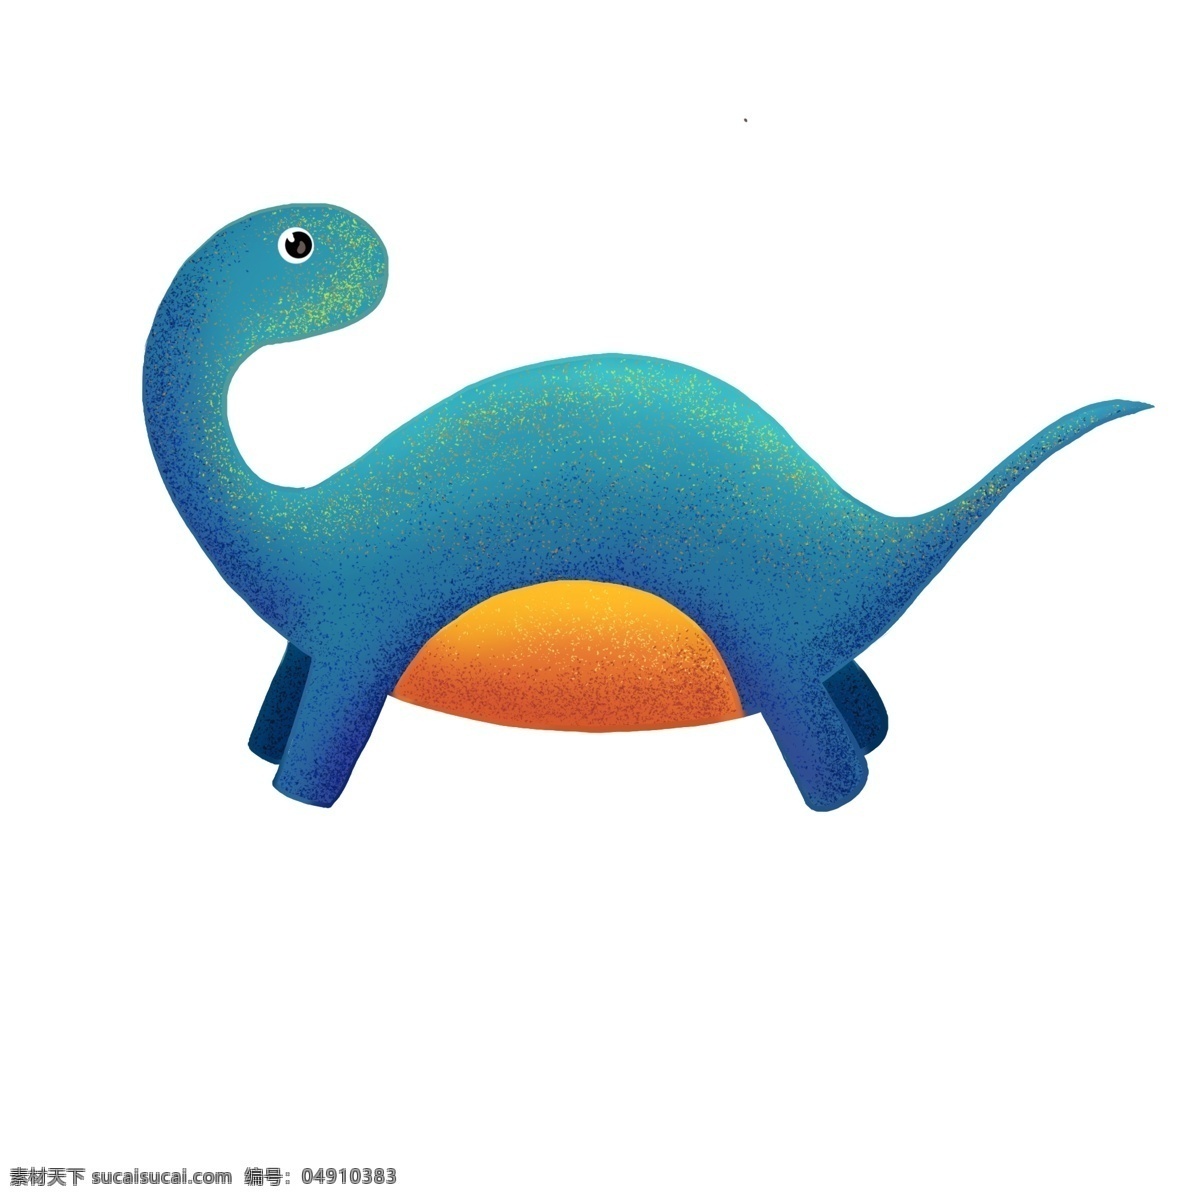 可爱 玩具 恐龙 插画 回头看恐龙 玩具蓝色恐龙 可爱玩具恐龙 野生动物 高大恐龙 卡通玩具恐龙